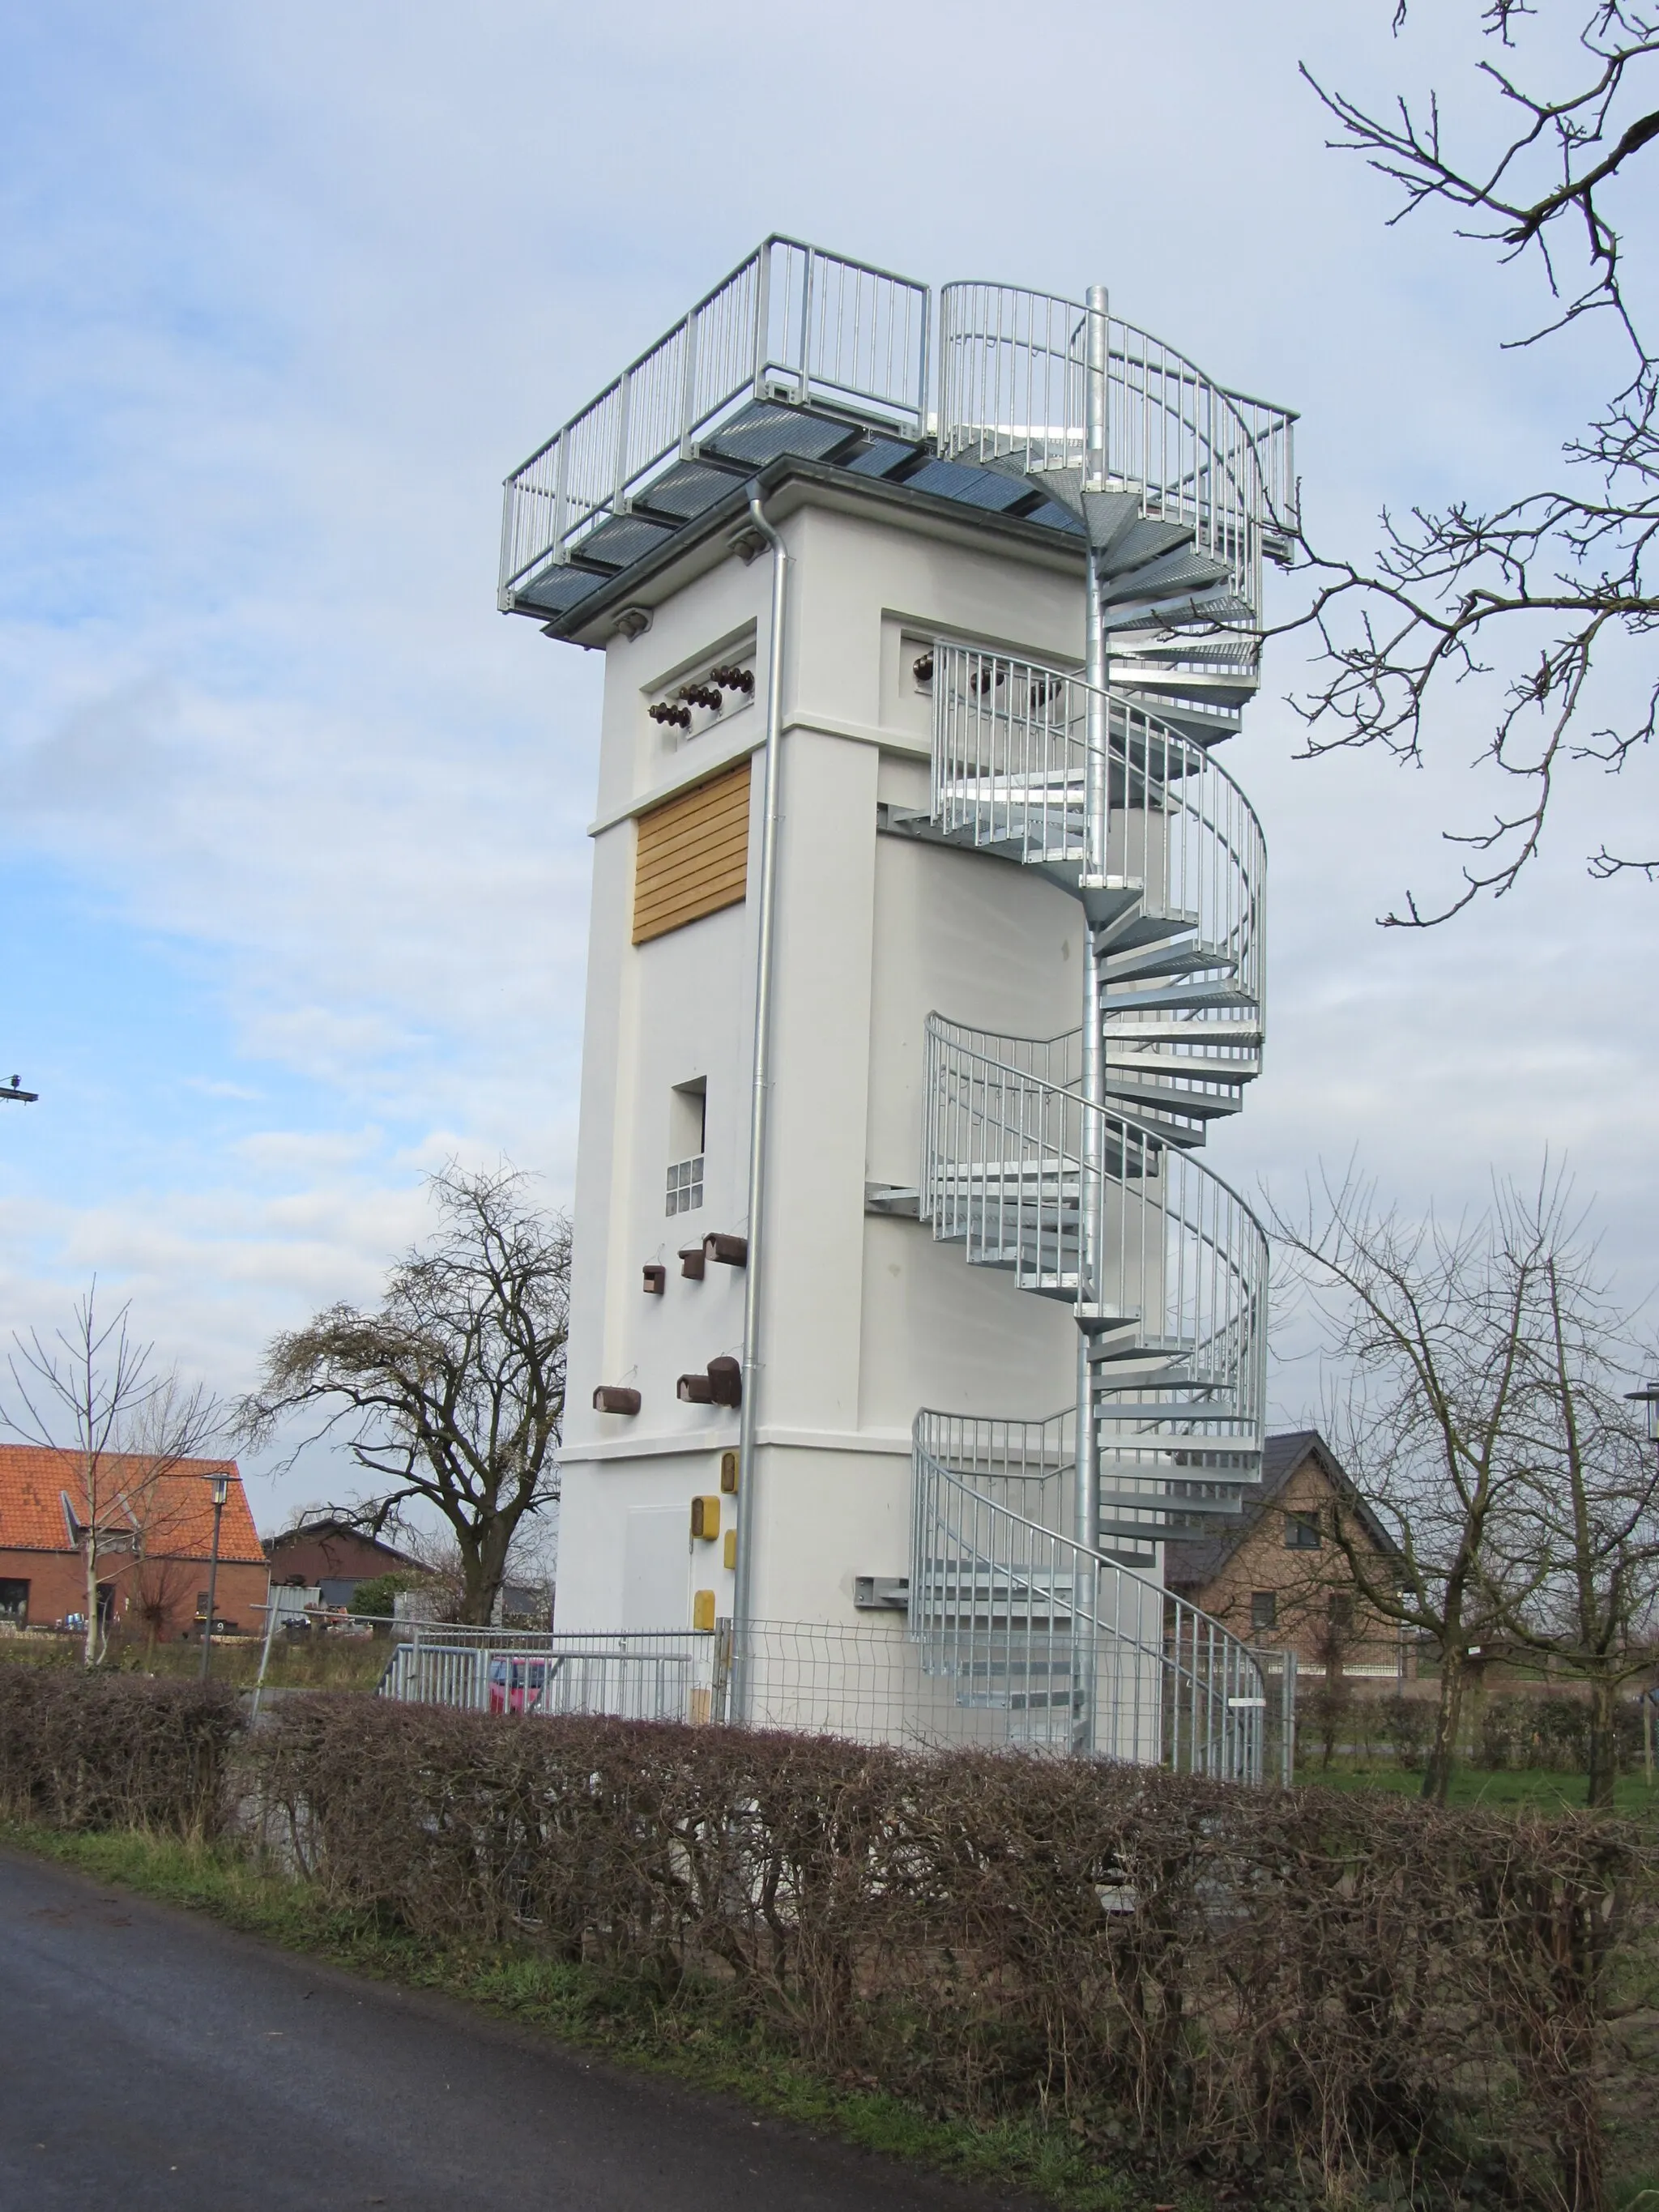 Photo showing: Ehemaliger Trafoturm der RWE umgebaut zum Artenschutzturm und zum Beobachtungsturm auf der Bislicher Insel bei Xanten.